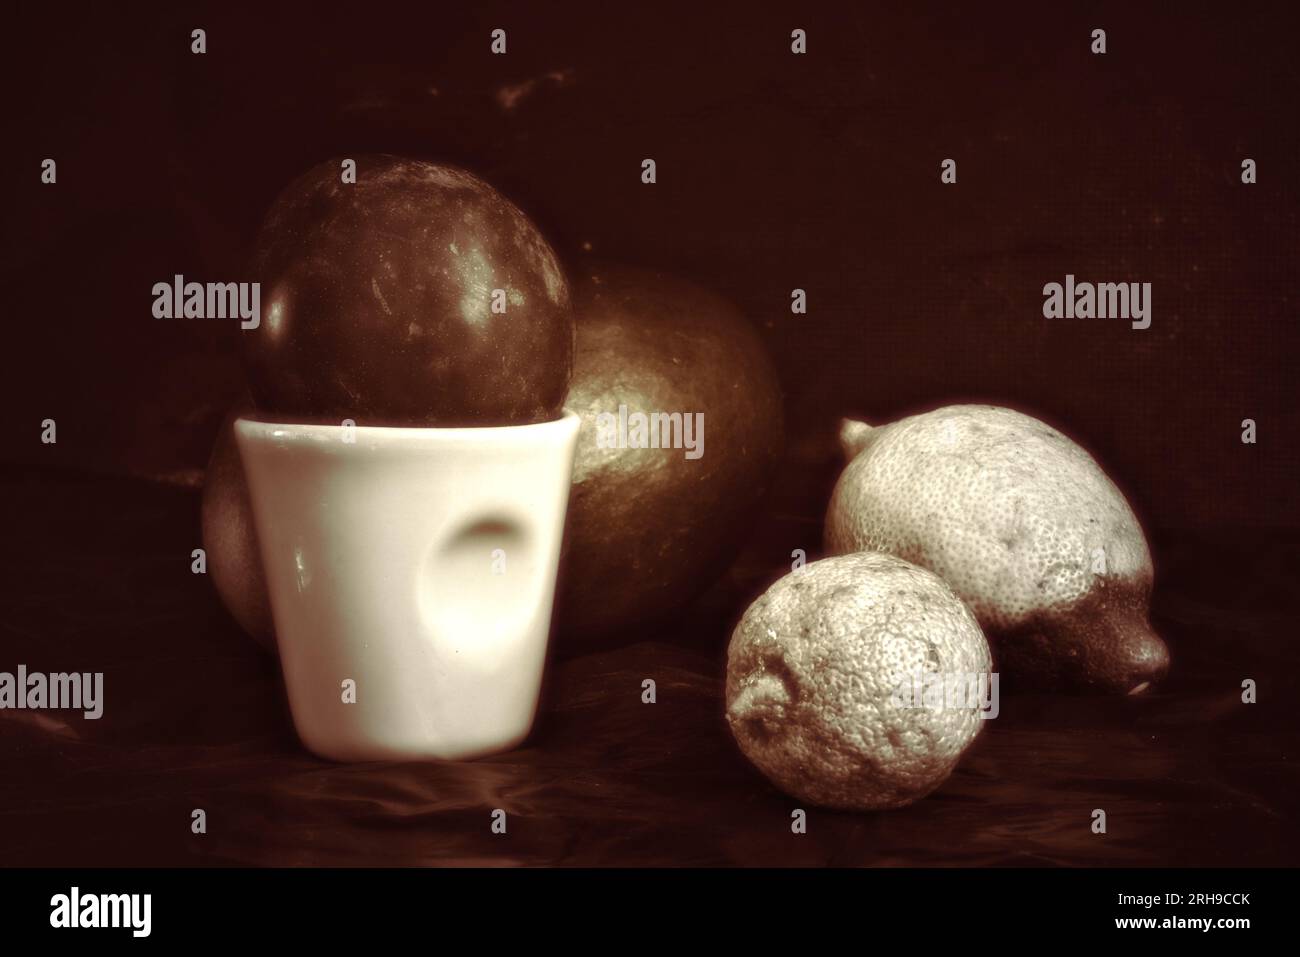 Brune nature morte avec 1 tasse de café, 1 mangues, 2 citrons. Monochrome avec fond sombre (photo studio) Banque D'Images